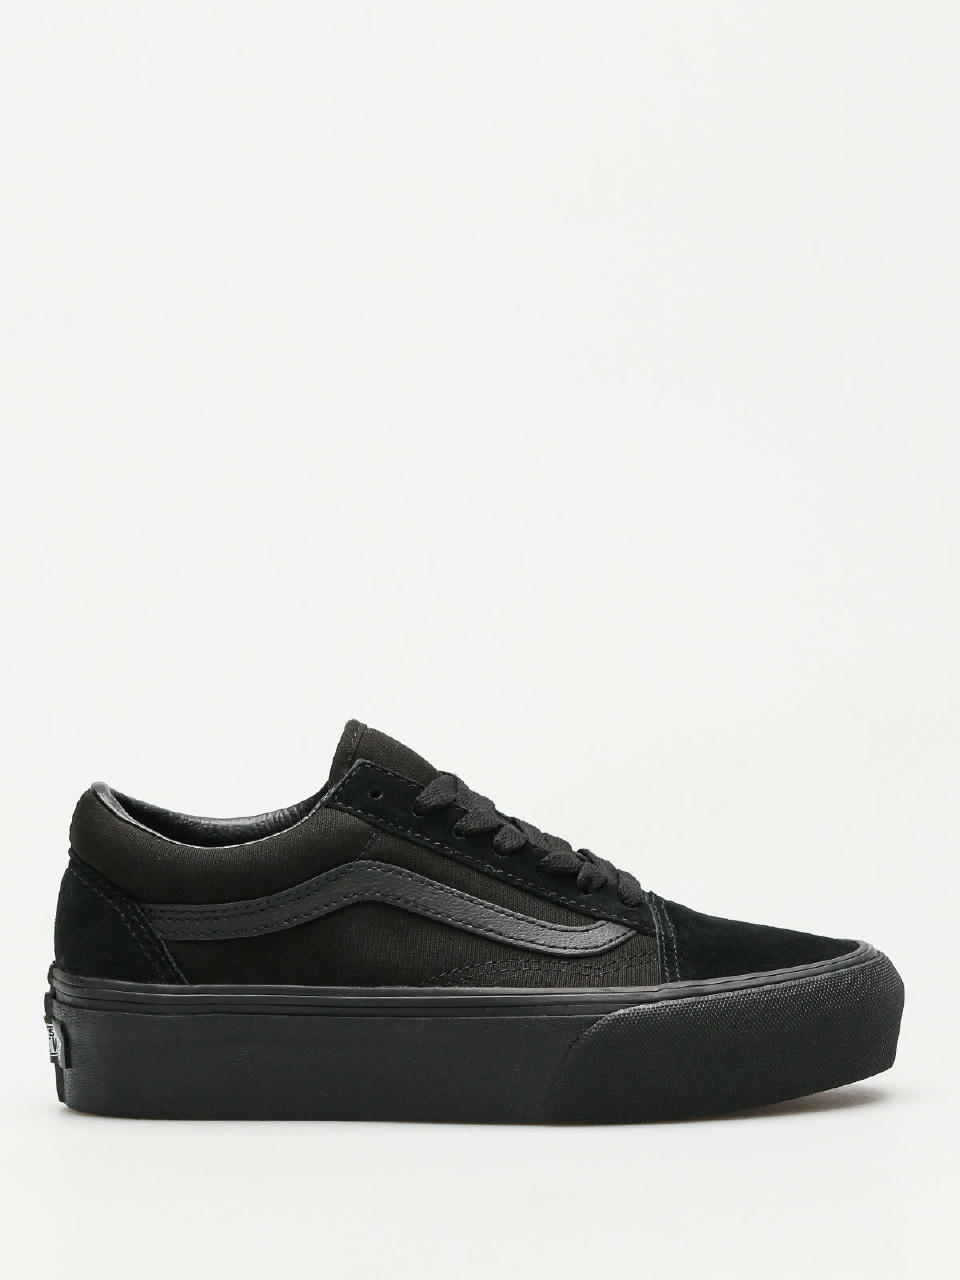 Vans Shoes Old Skool (black/black)